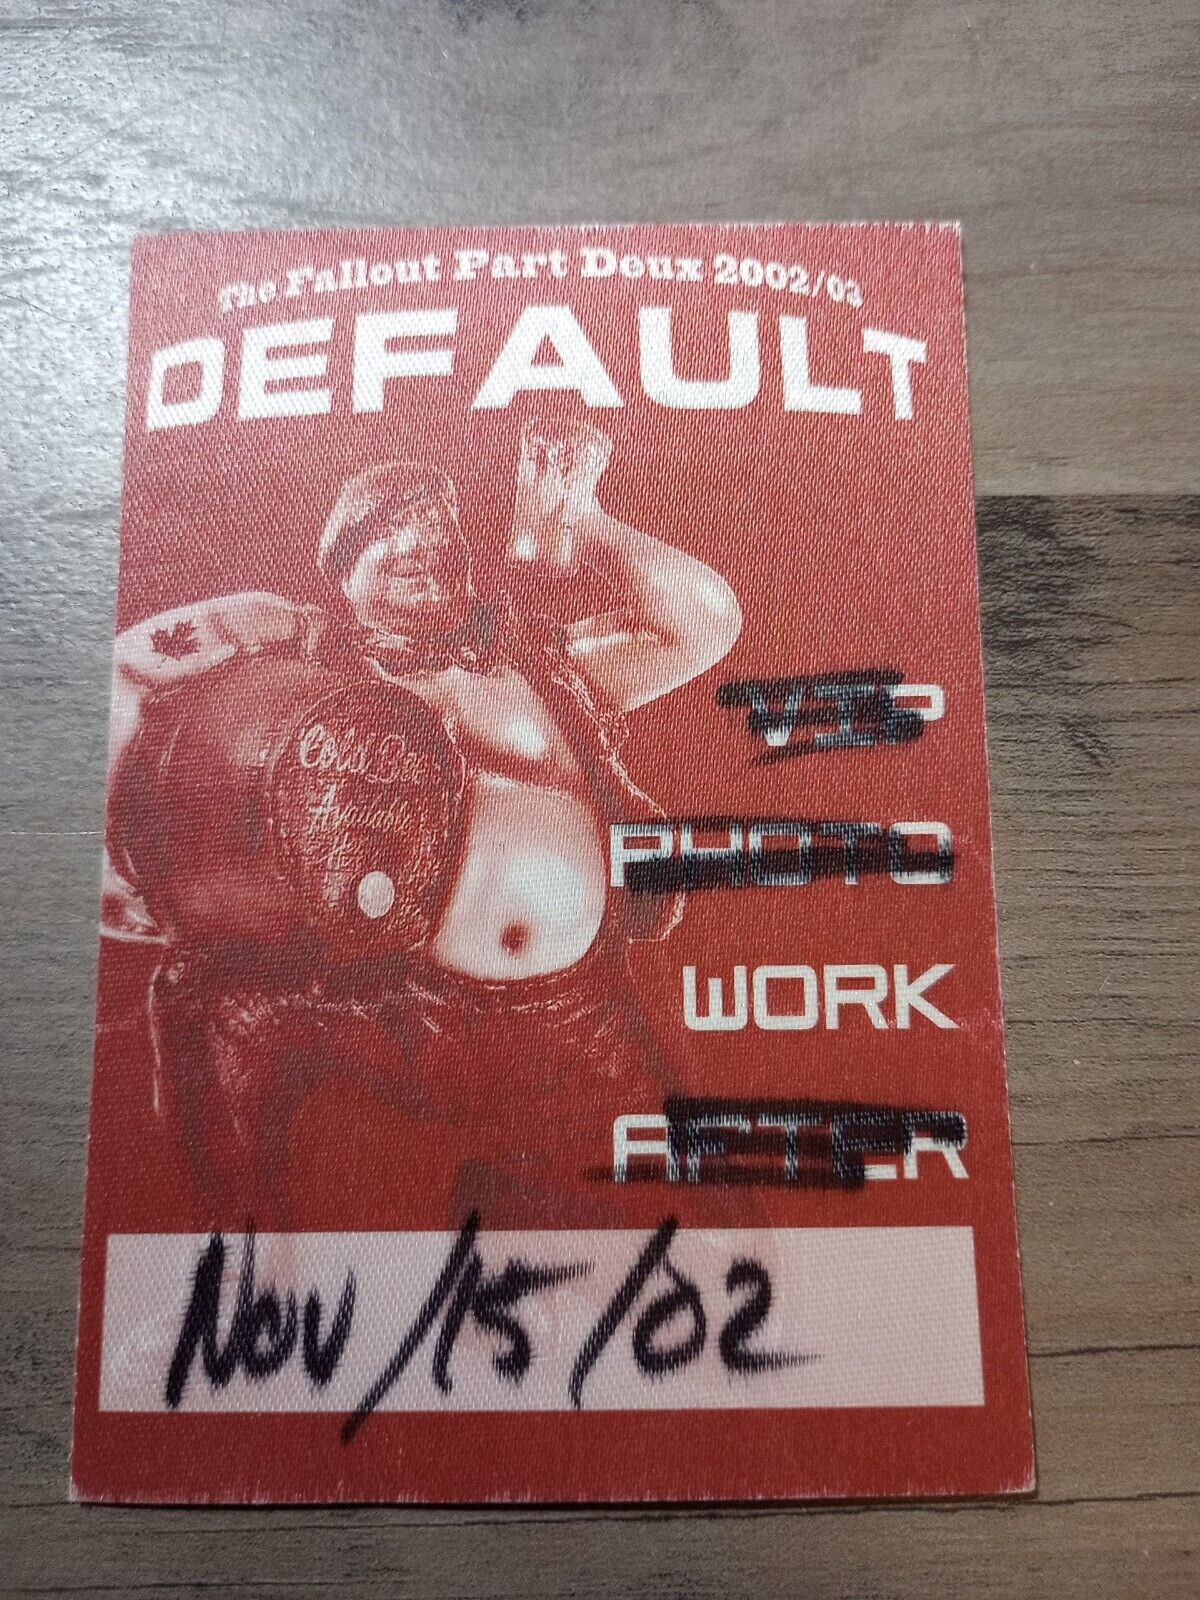 Default 2002-03 The Fallout Part Deux Tour Backstage Pass Concert